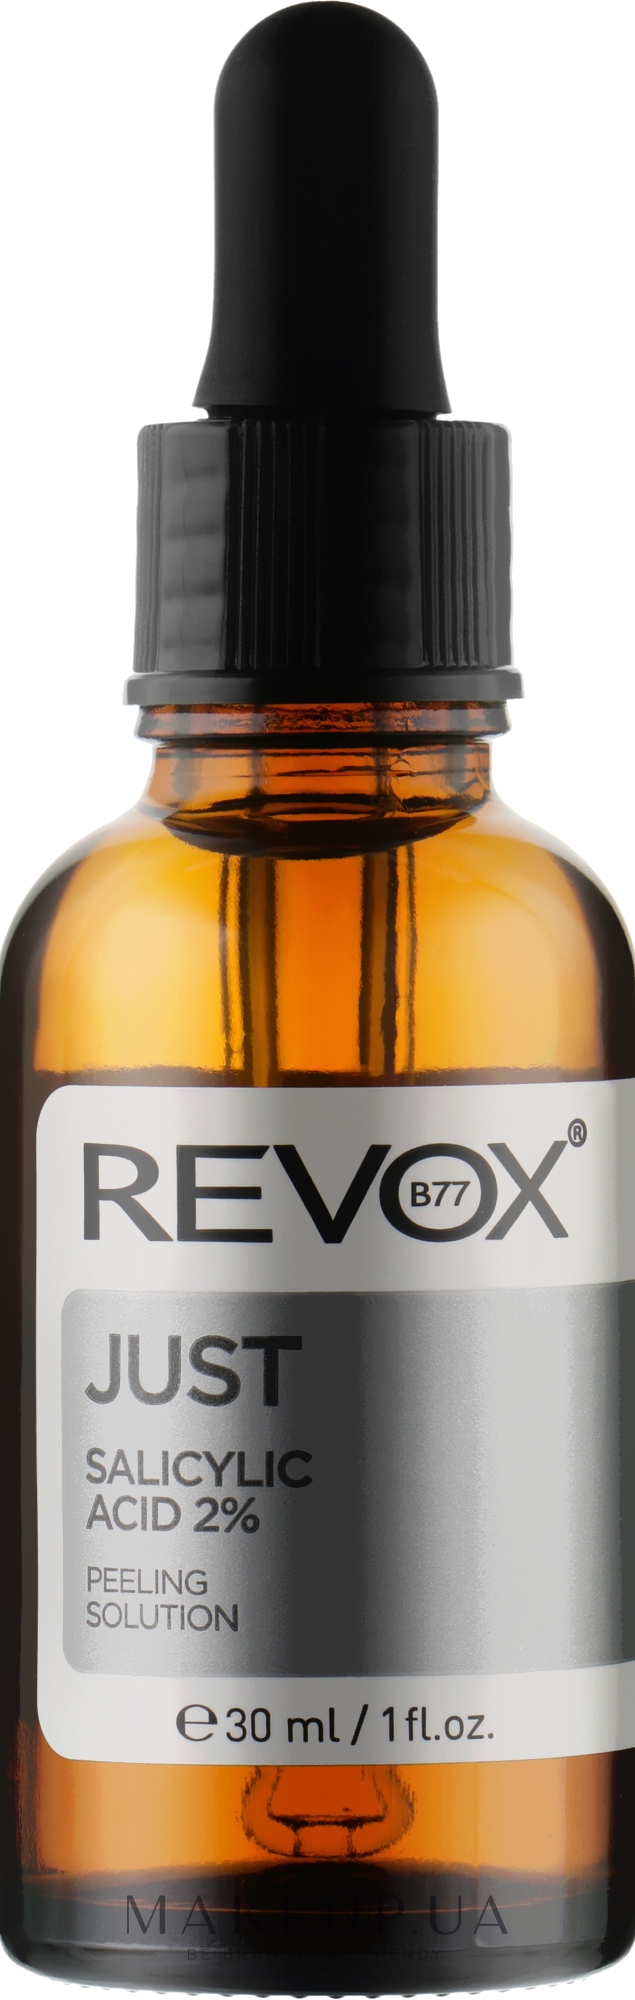 Salicylic Acid 2% Toner – Revox B77